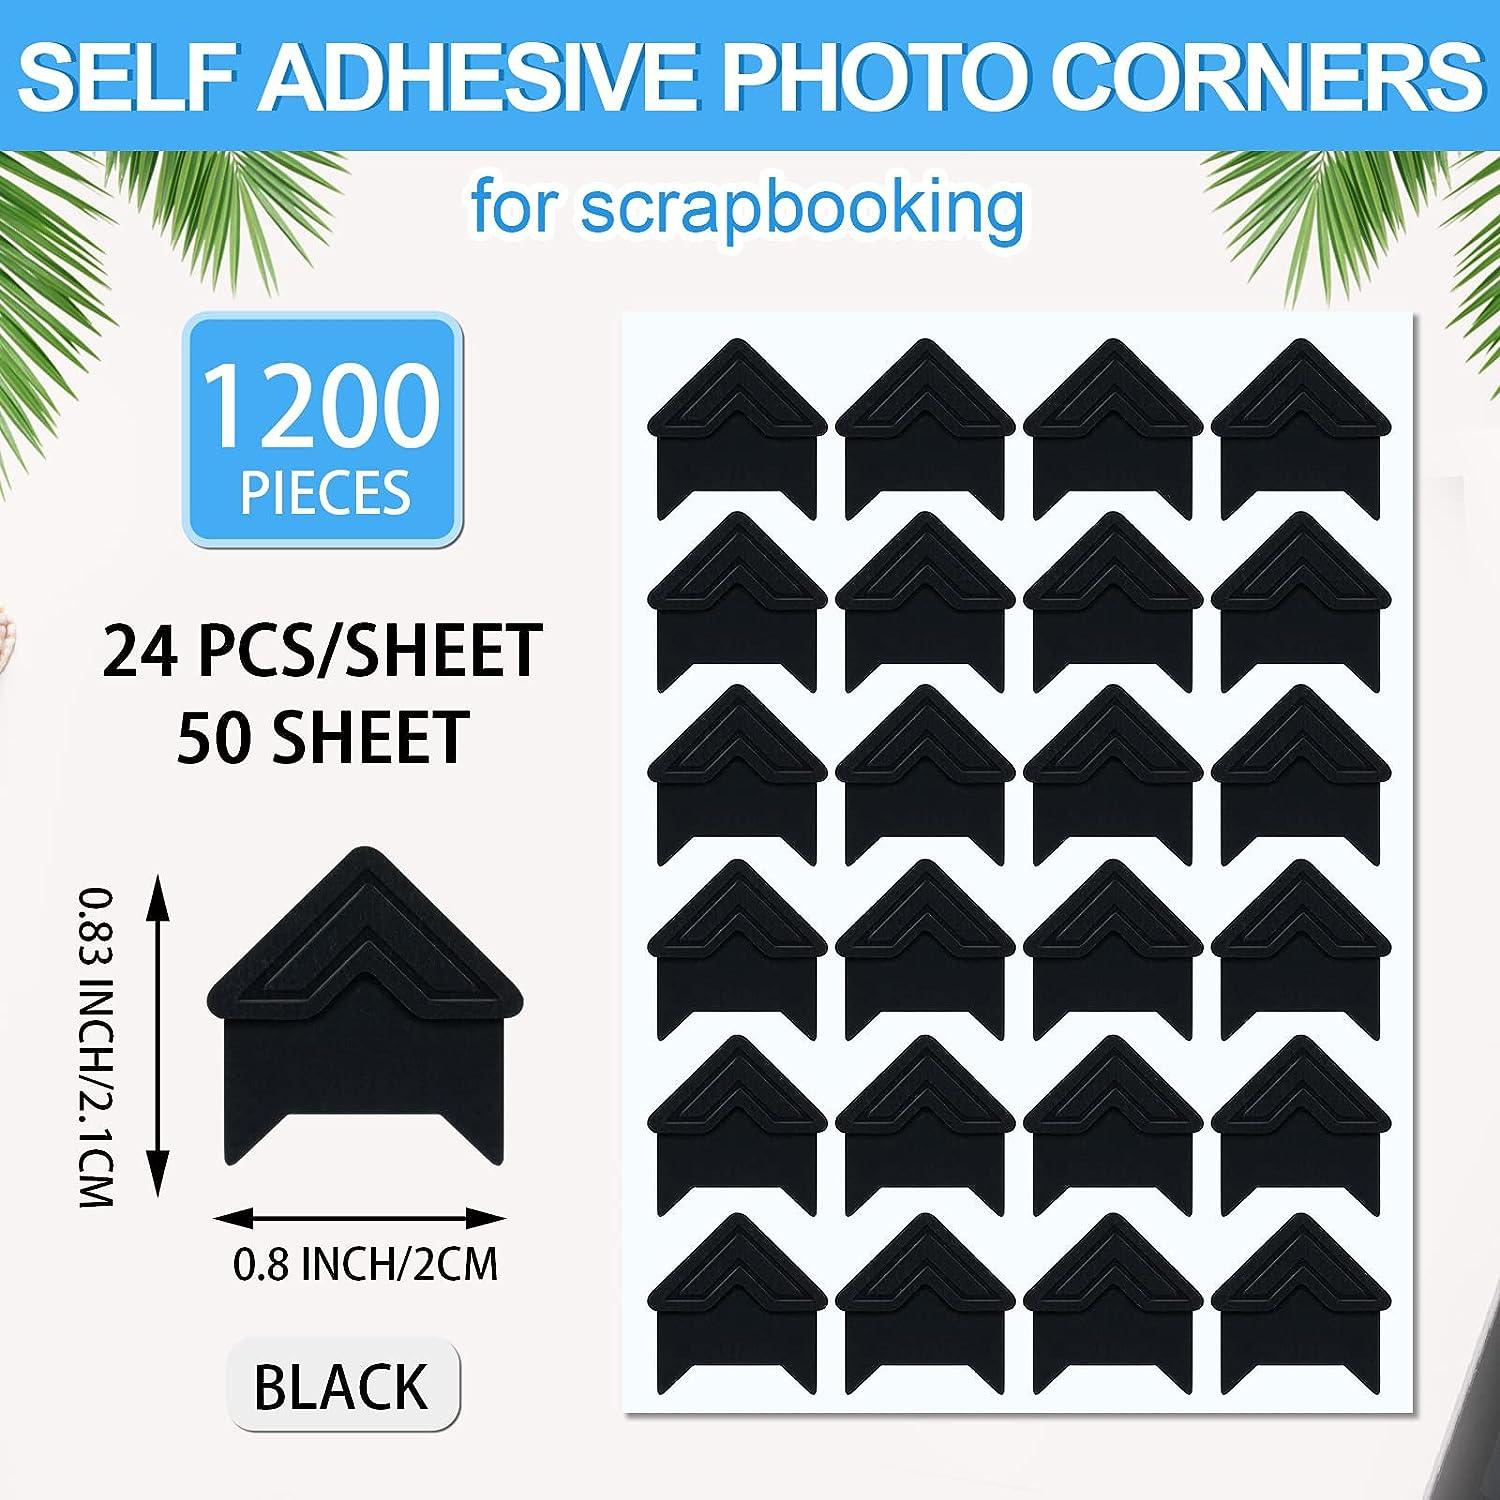 1200 Pcs Photo Corners Self Adhesive Black Photo Corners for